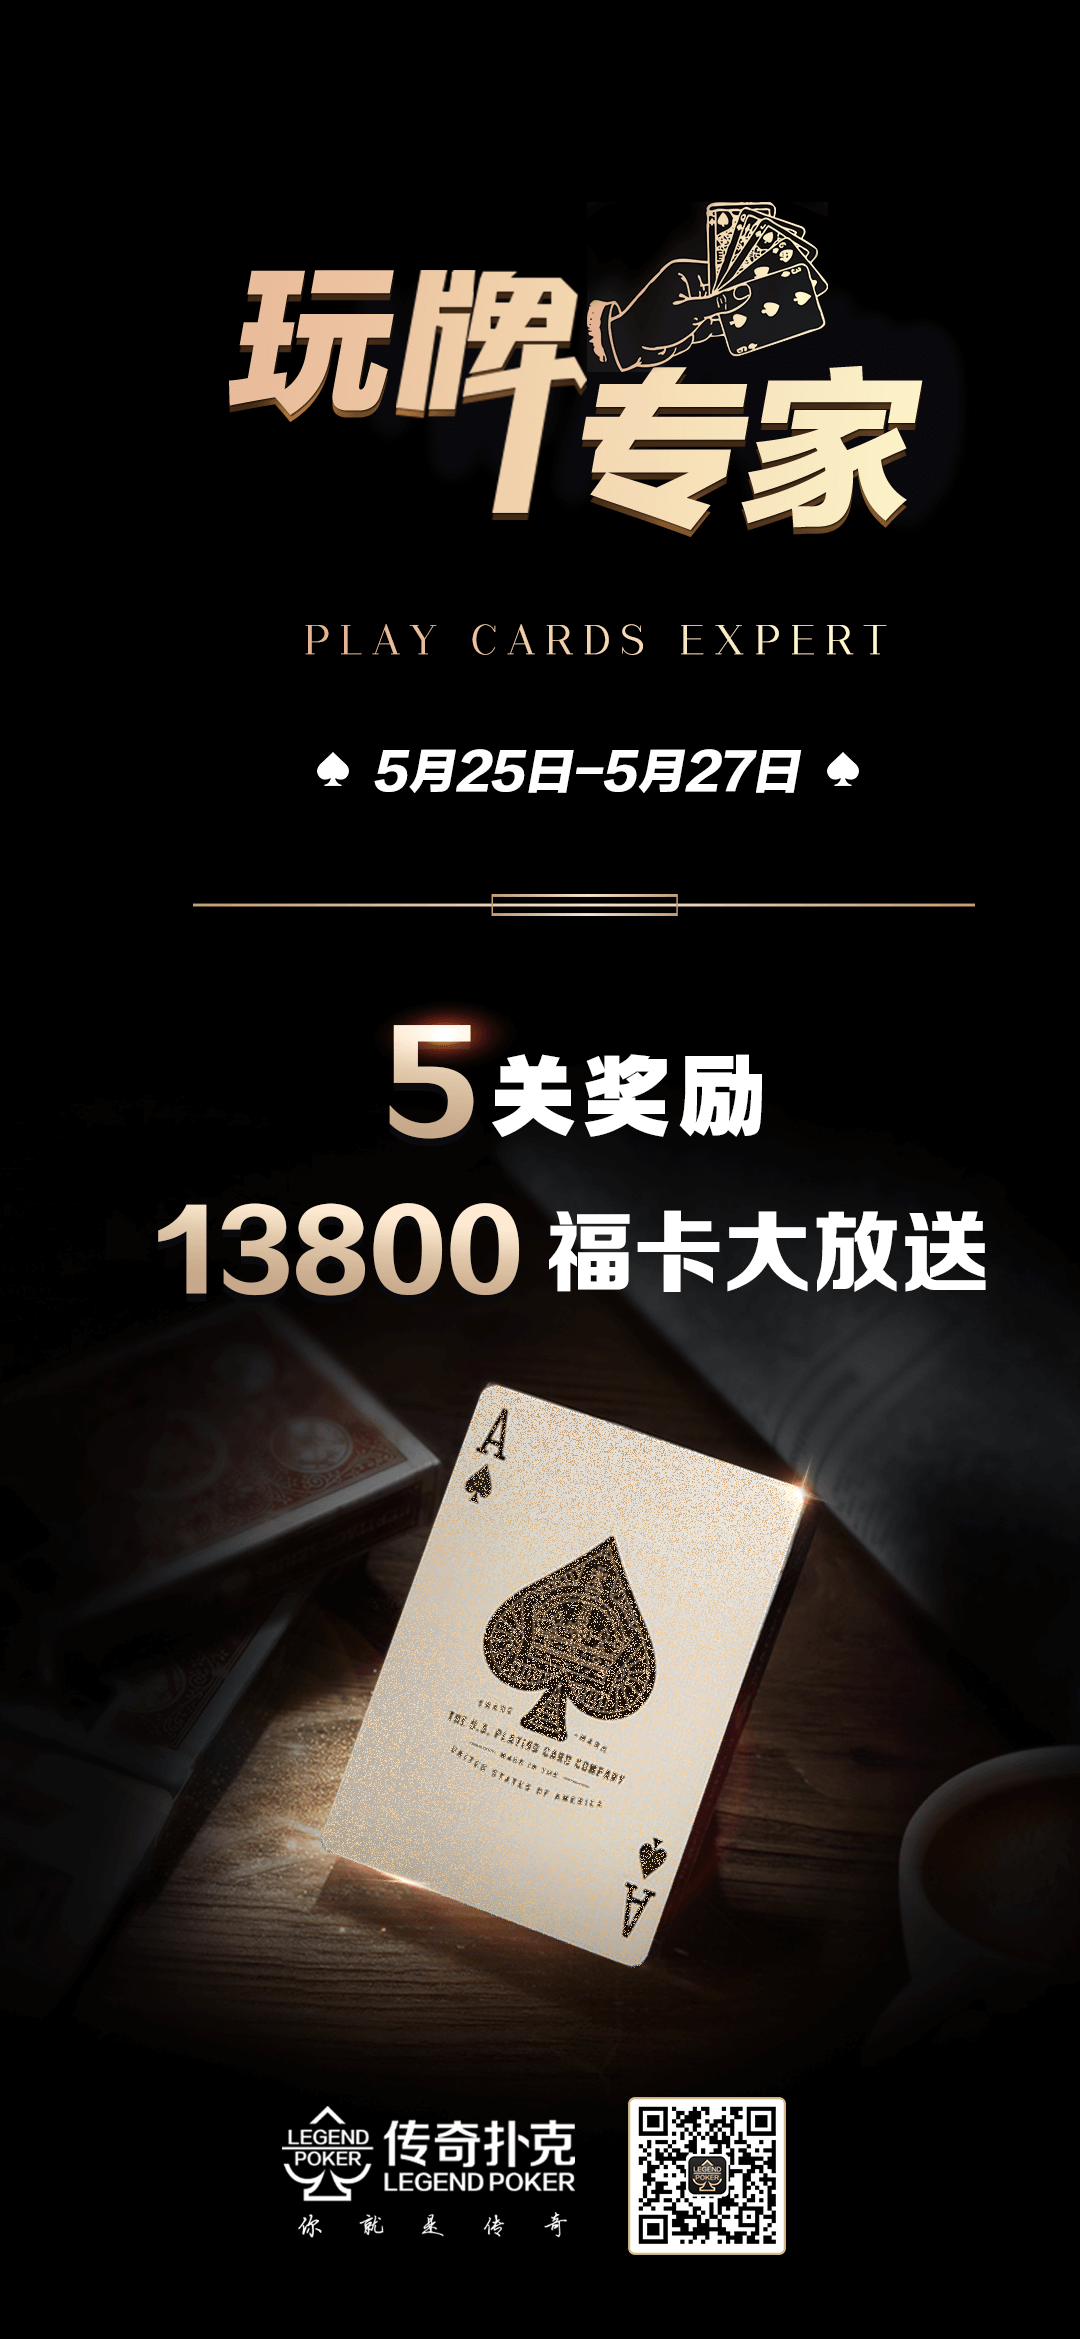 传奇扑克玩牌专家活动只需5关领取13800福卡